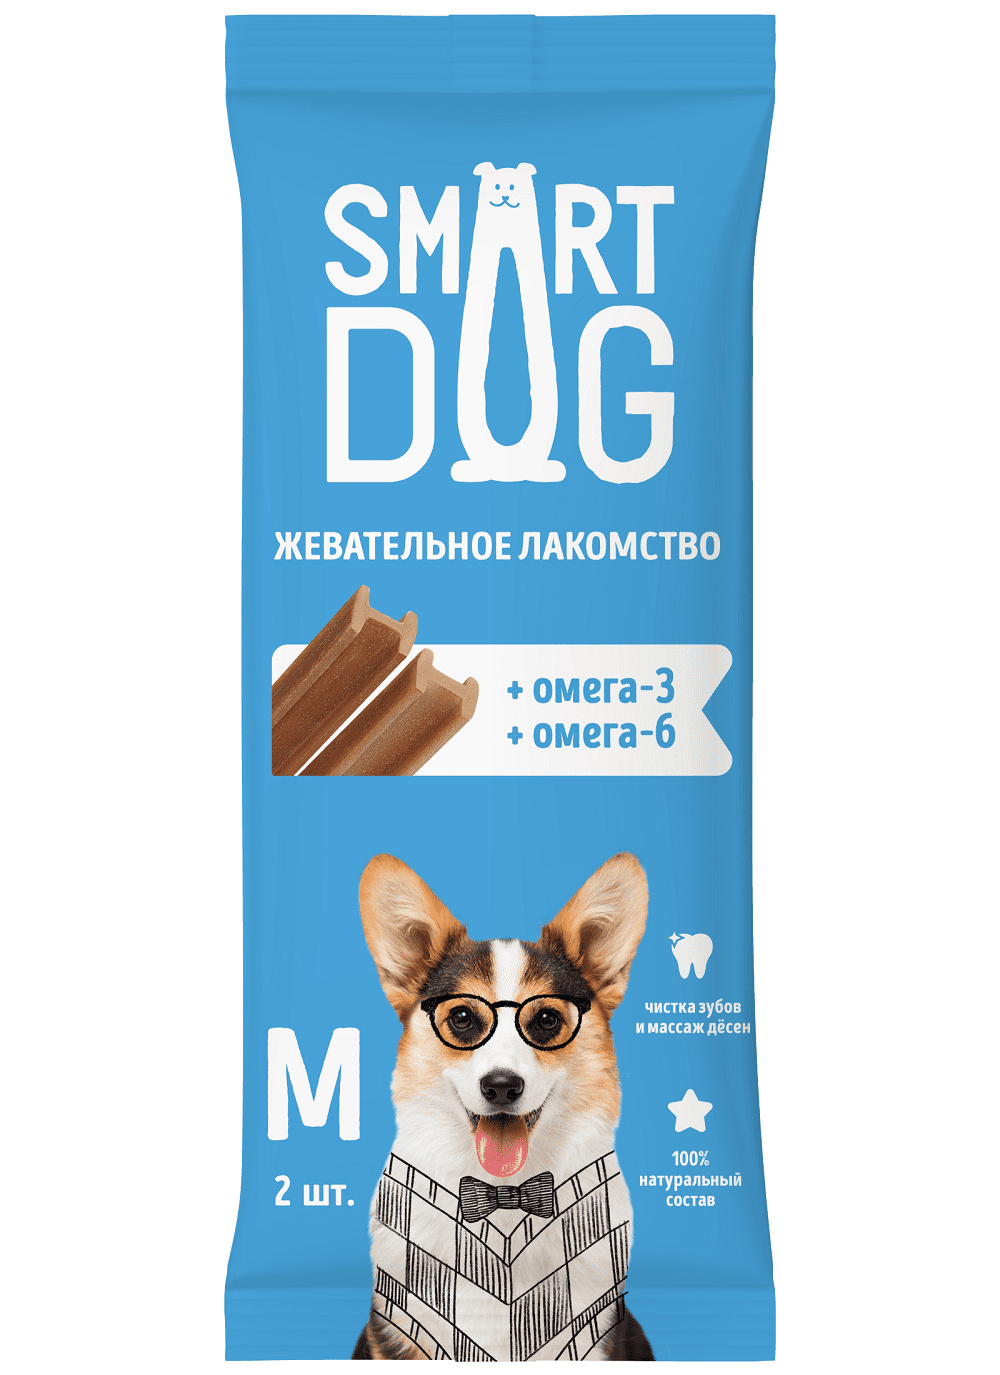 Smart Dog лакомства Smart Dog лакомства жевательное лакомство с омега-3 и -6 для собак и щенков (36 г)